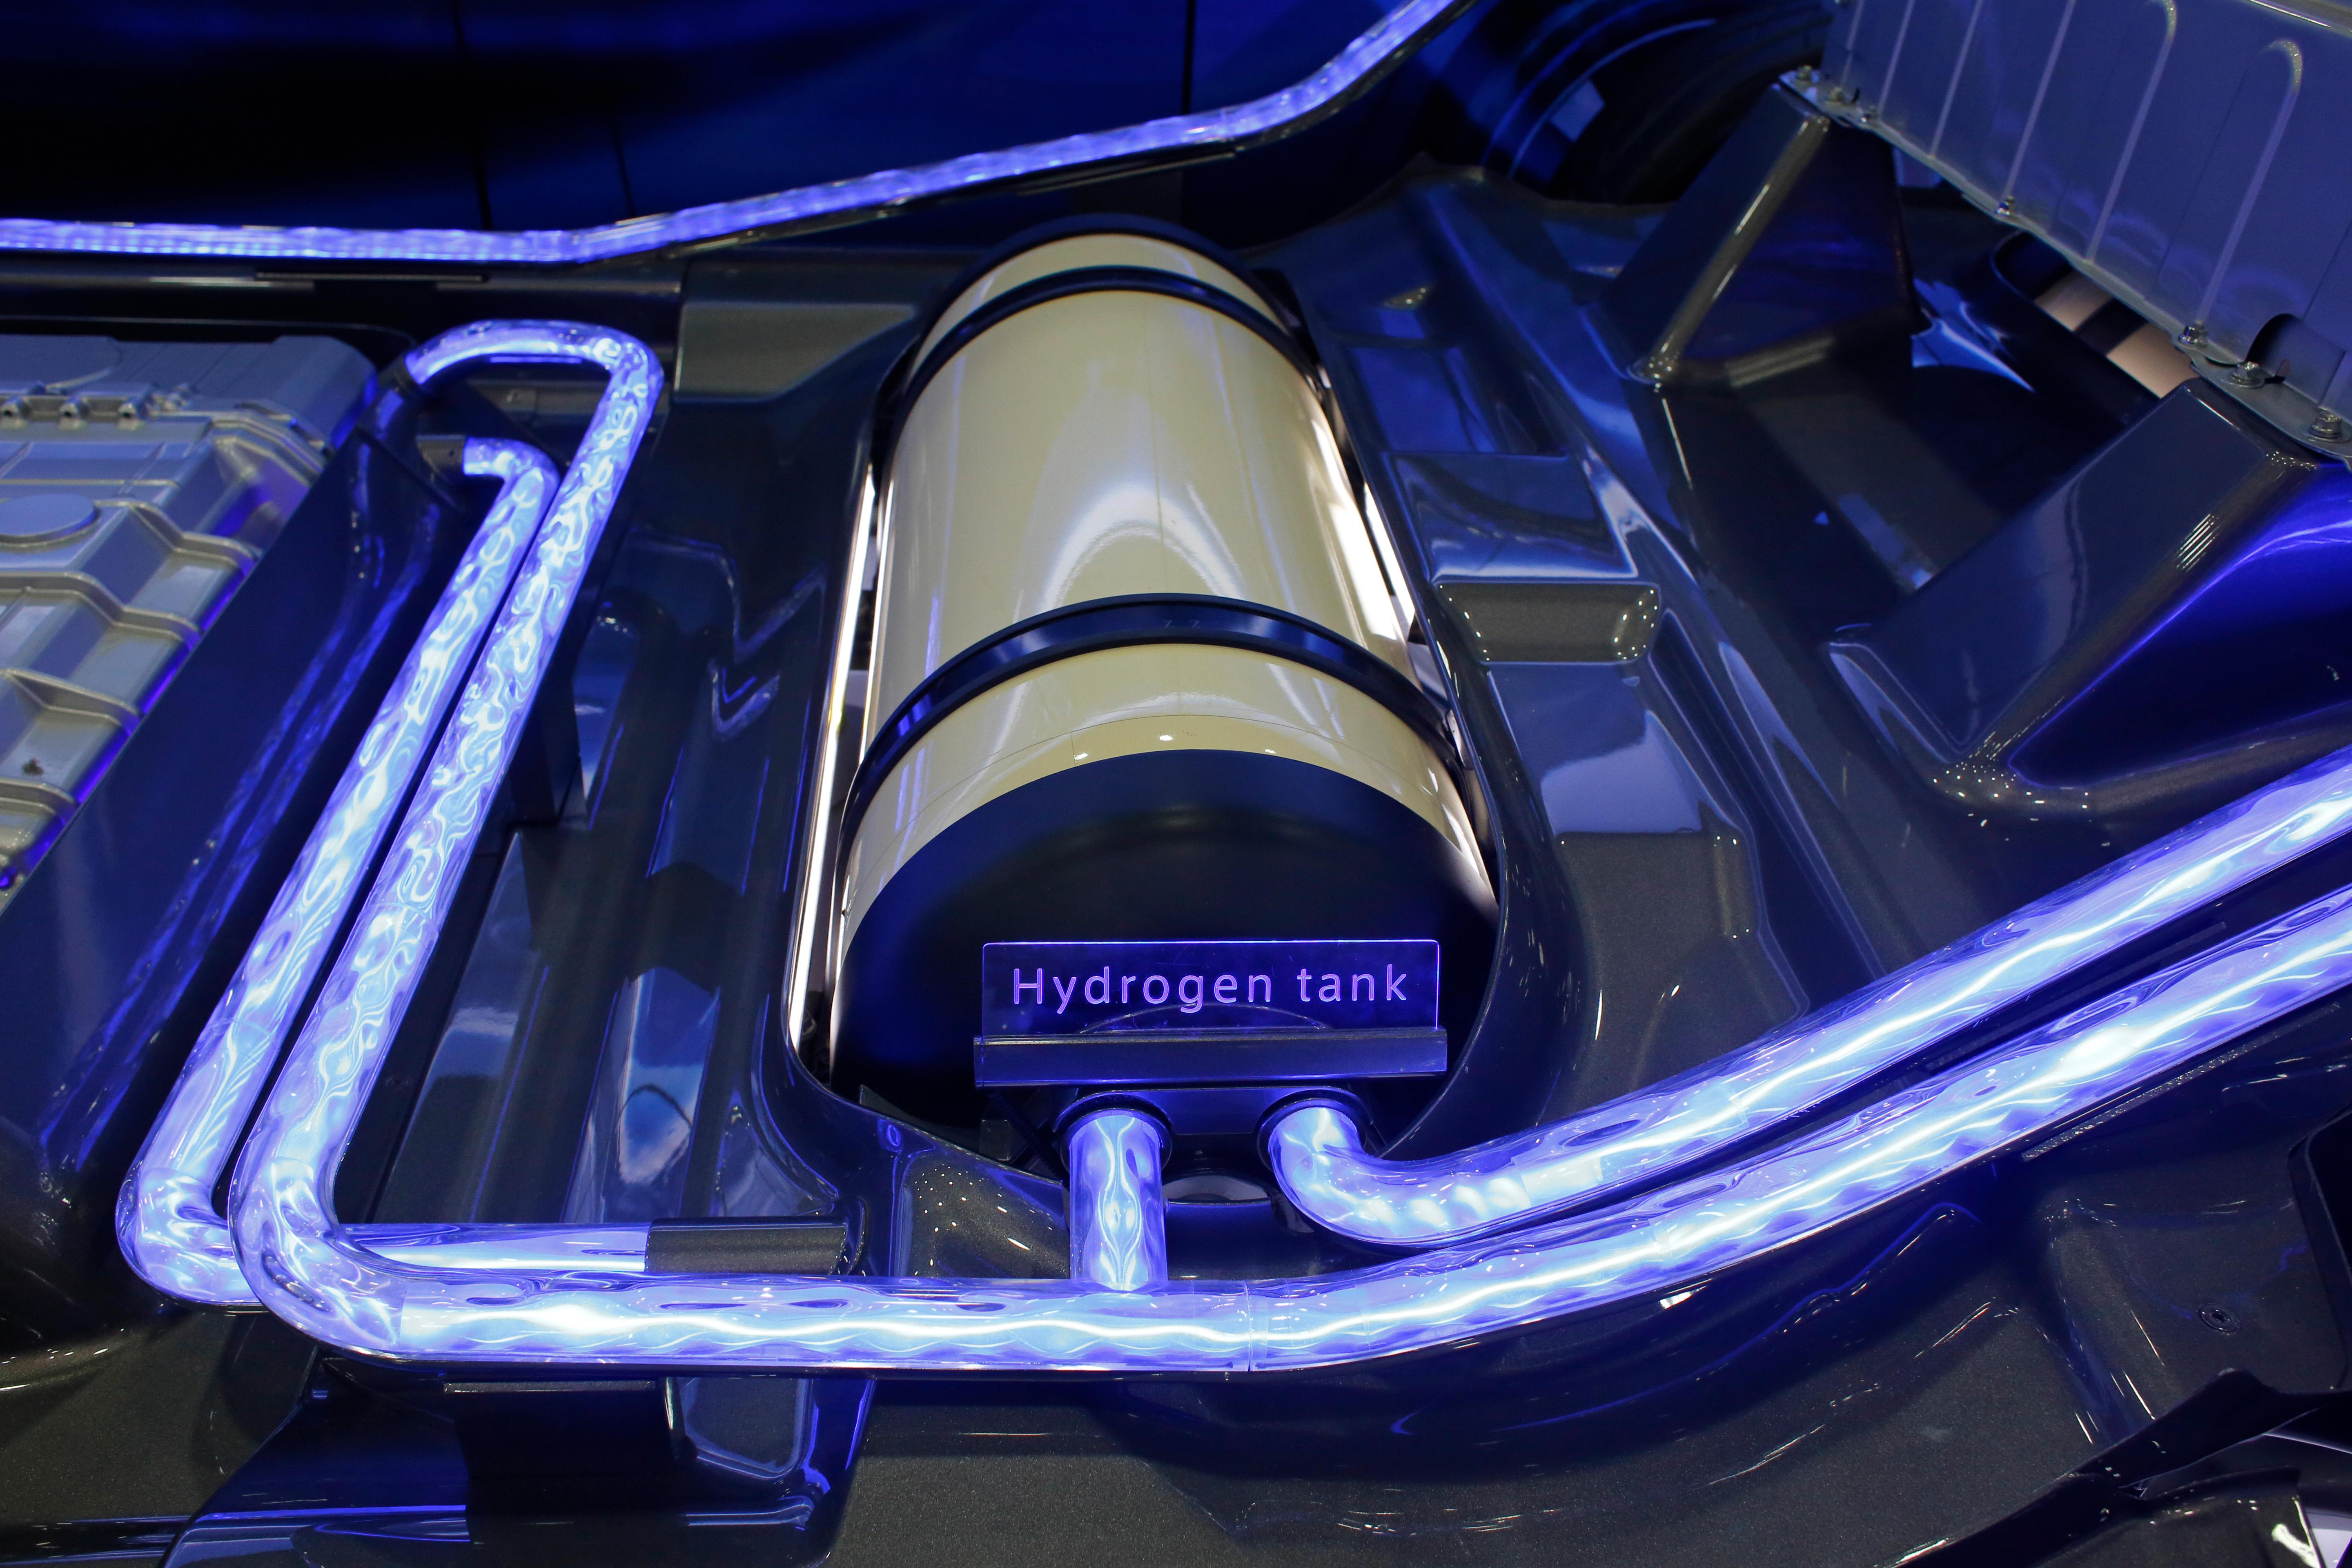 Hydrogen tubing in a car engine